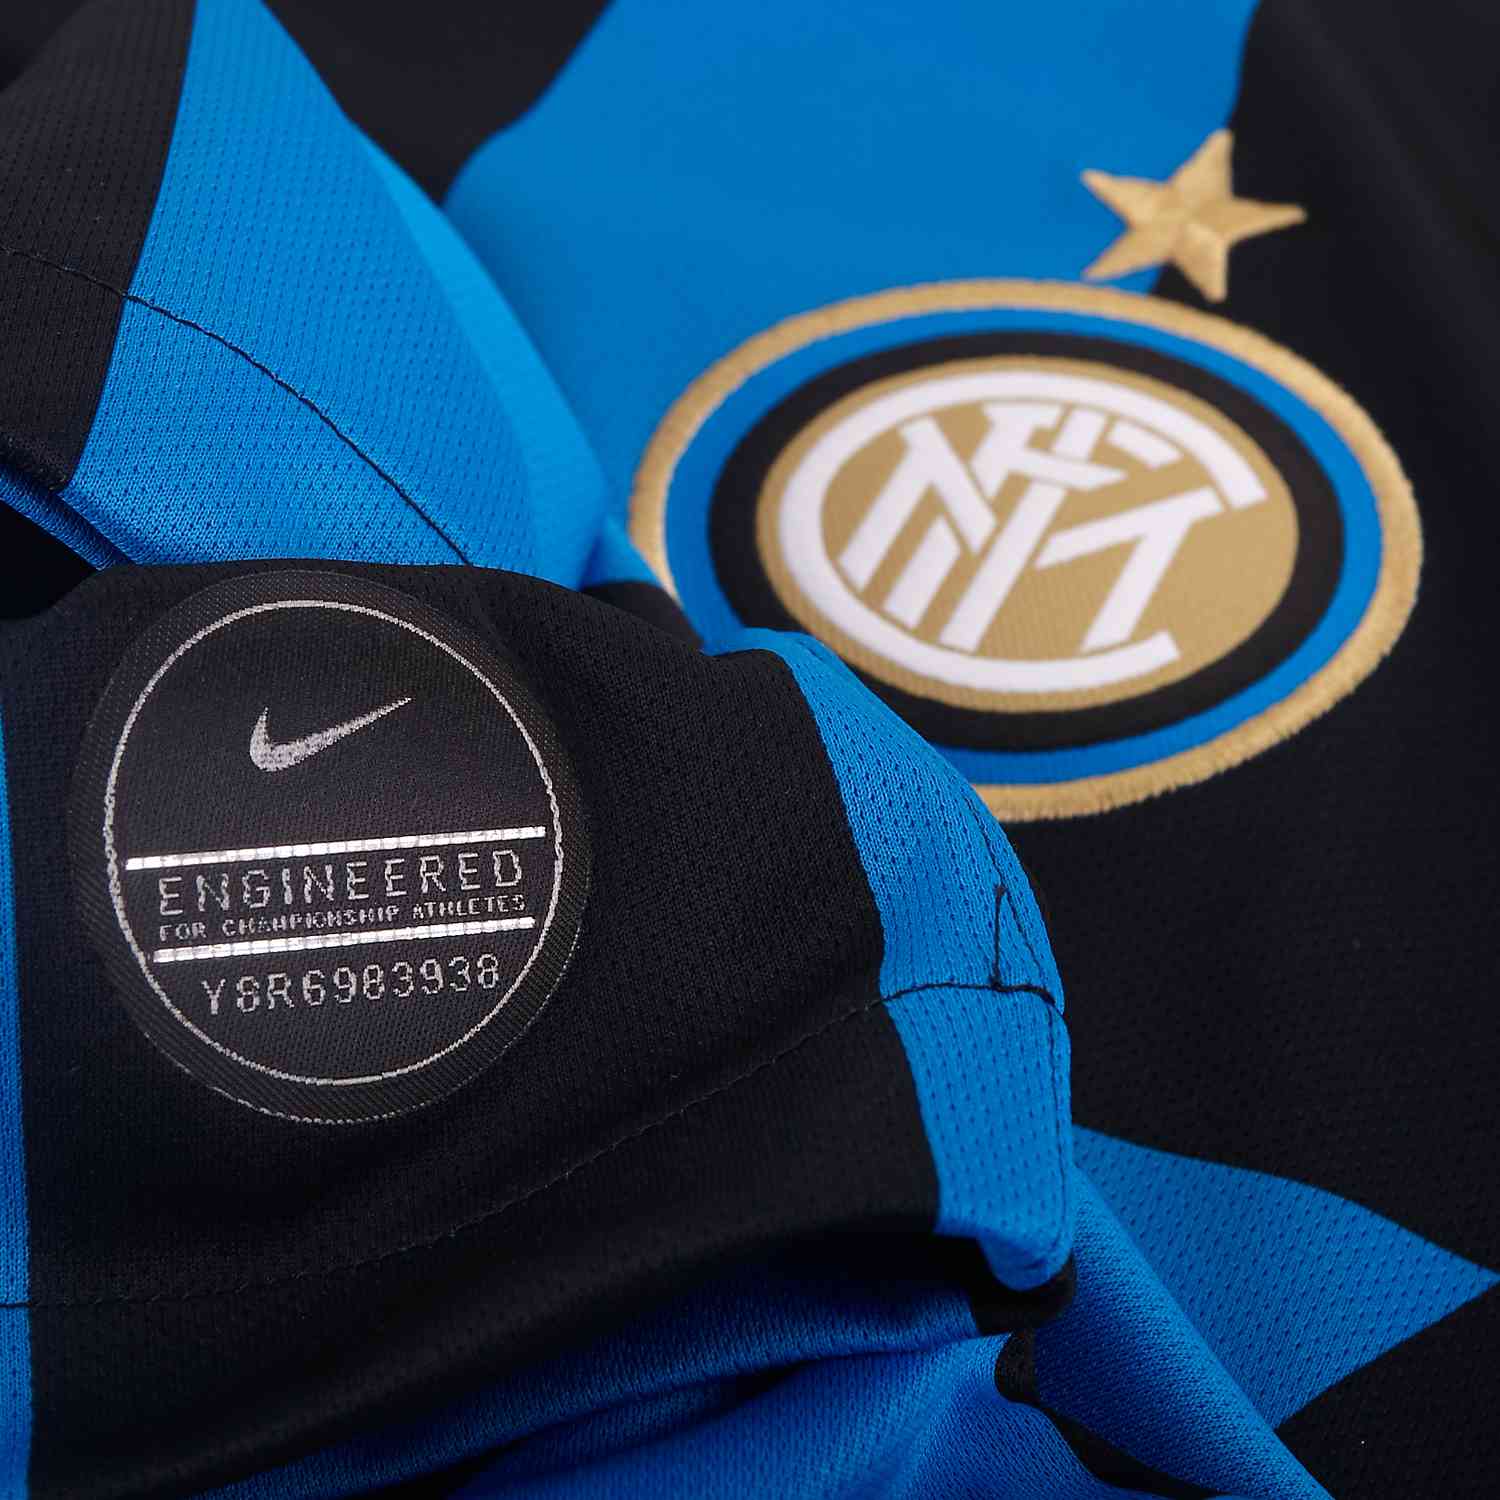 2019/20 Nike Inter Milan Home Jersey - SoccerPro